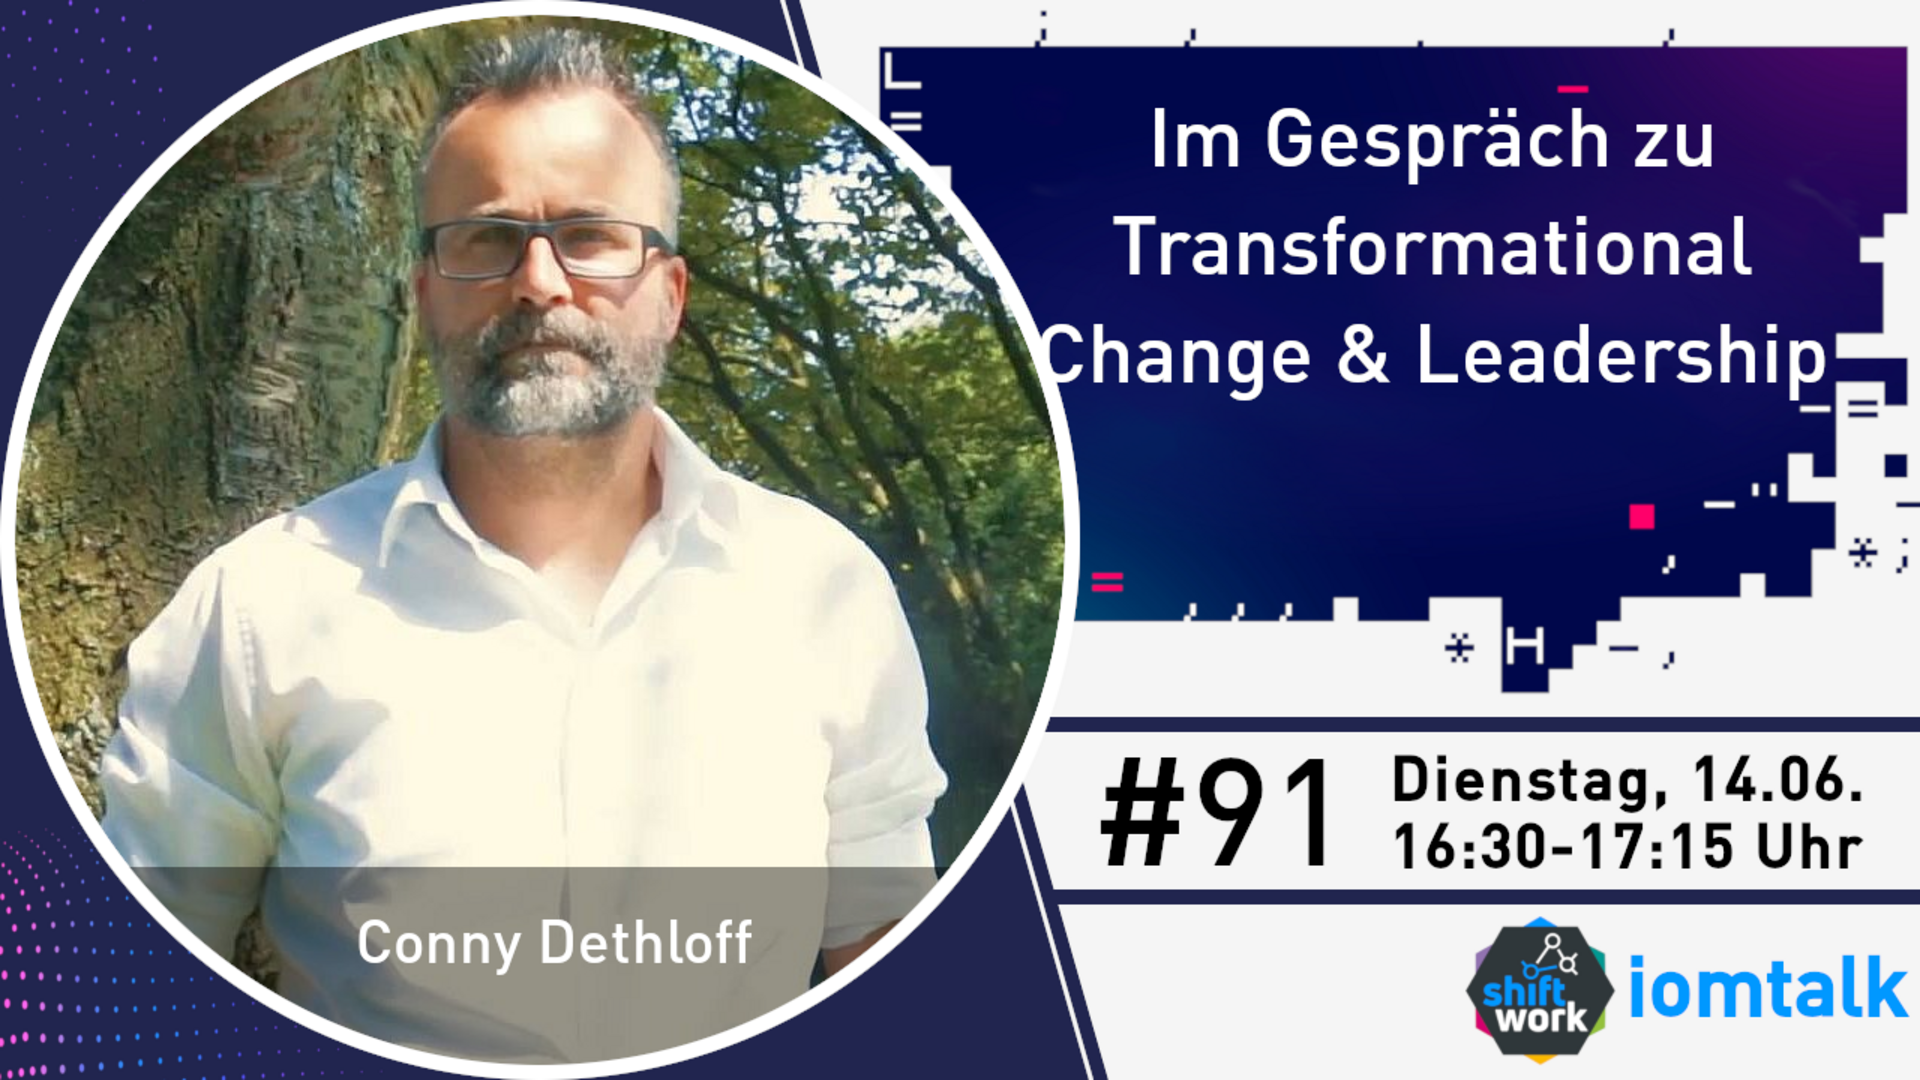 Im Gespräch mit Conny Dethloff zu Transformational Change & Leadership